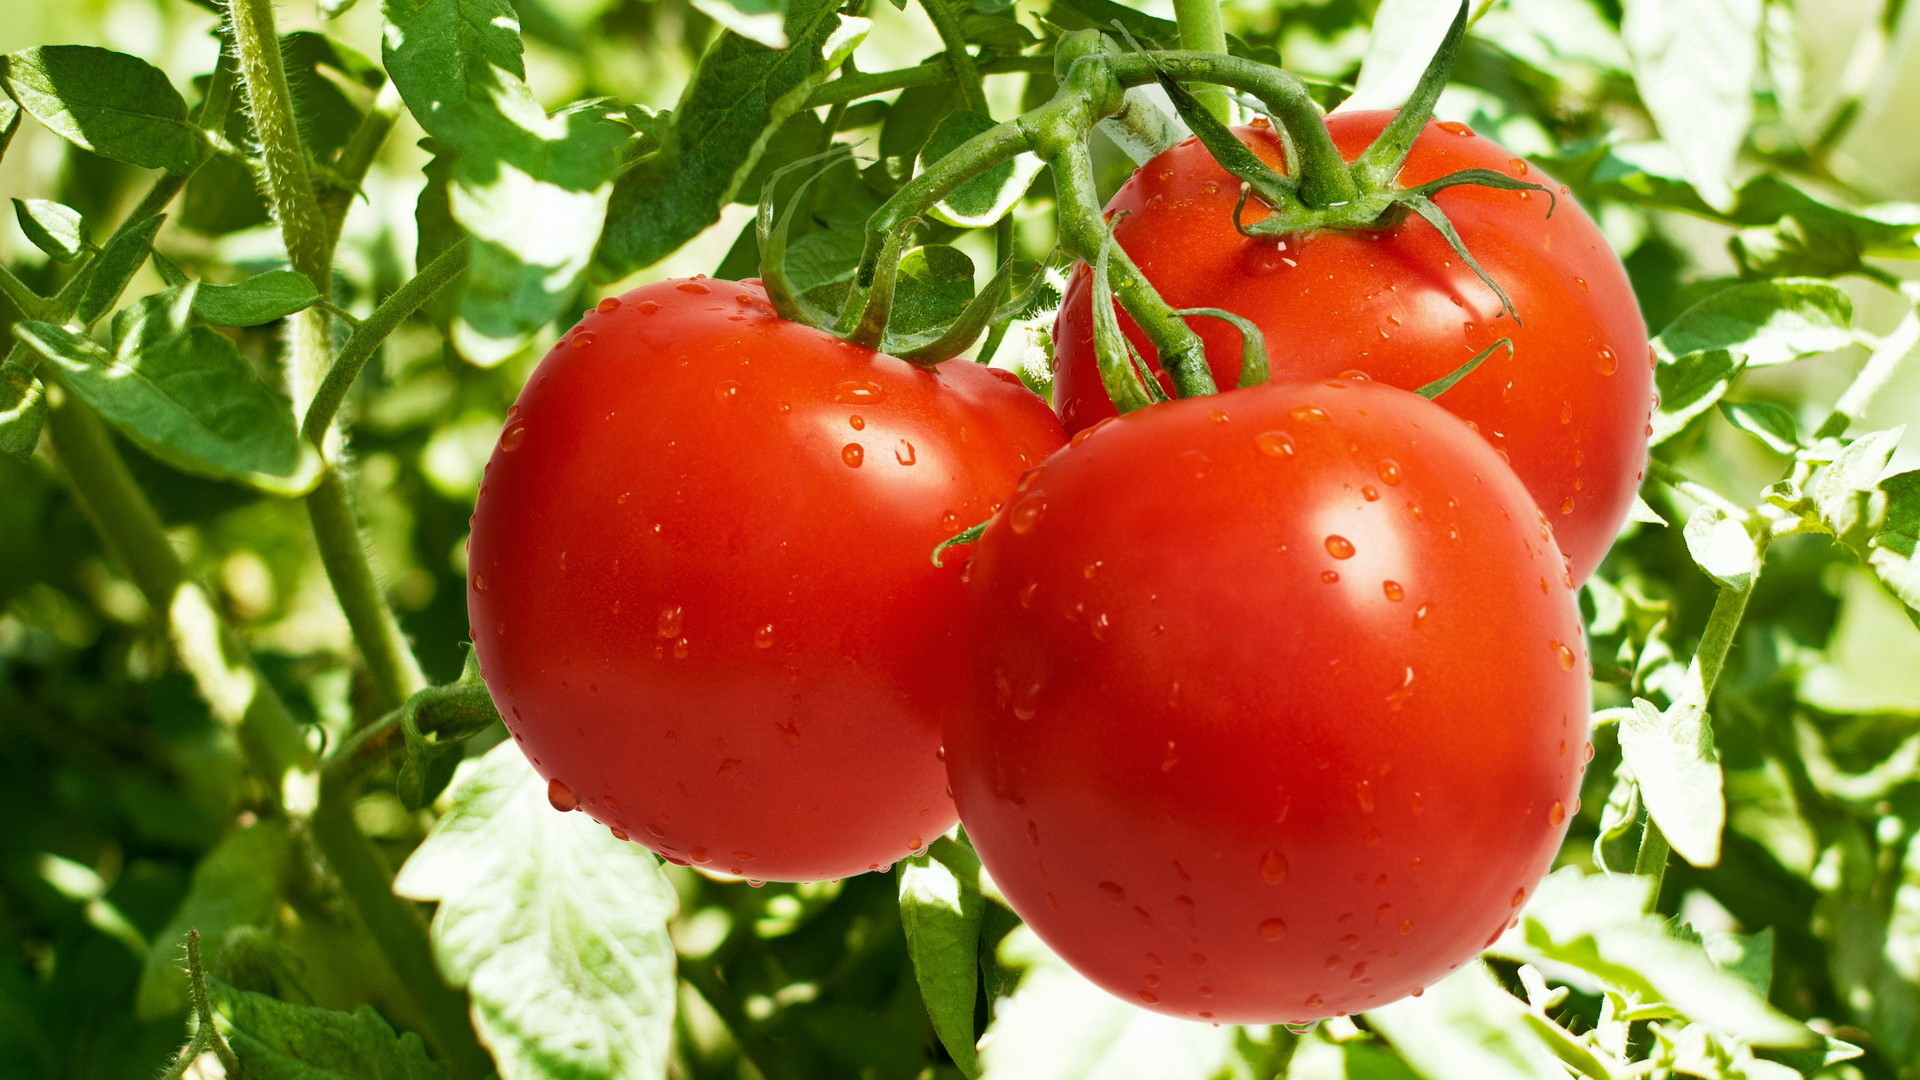 Exportations espagnoles de tomates: Tendance à la baisse !